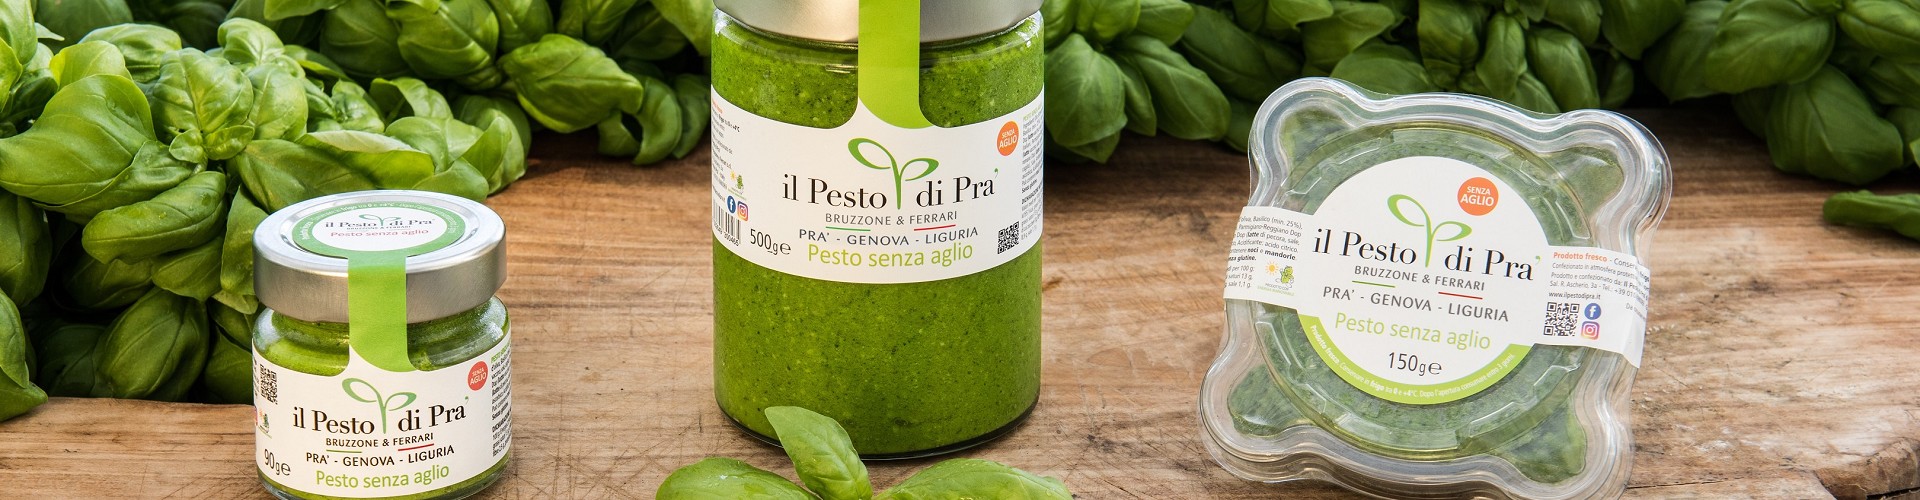 Pesto without Garlic